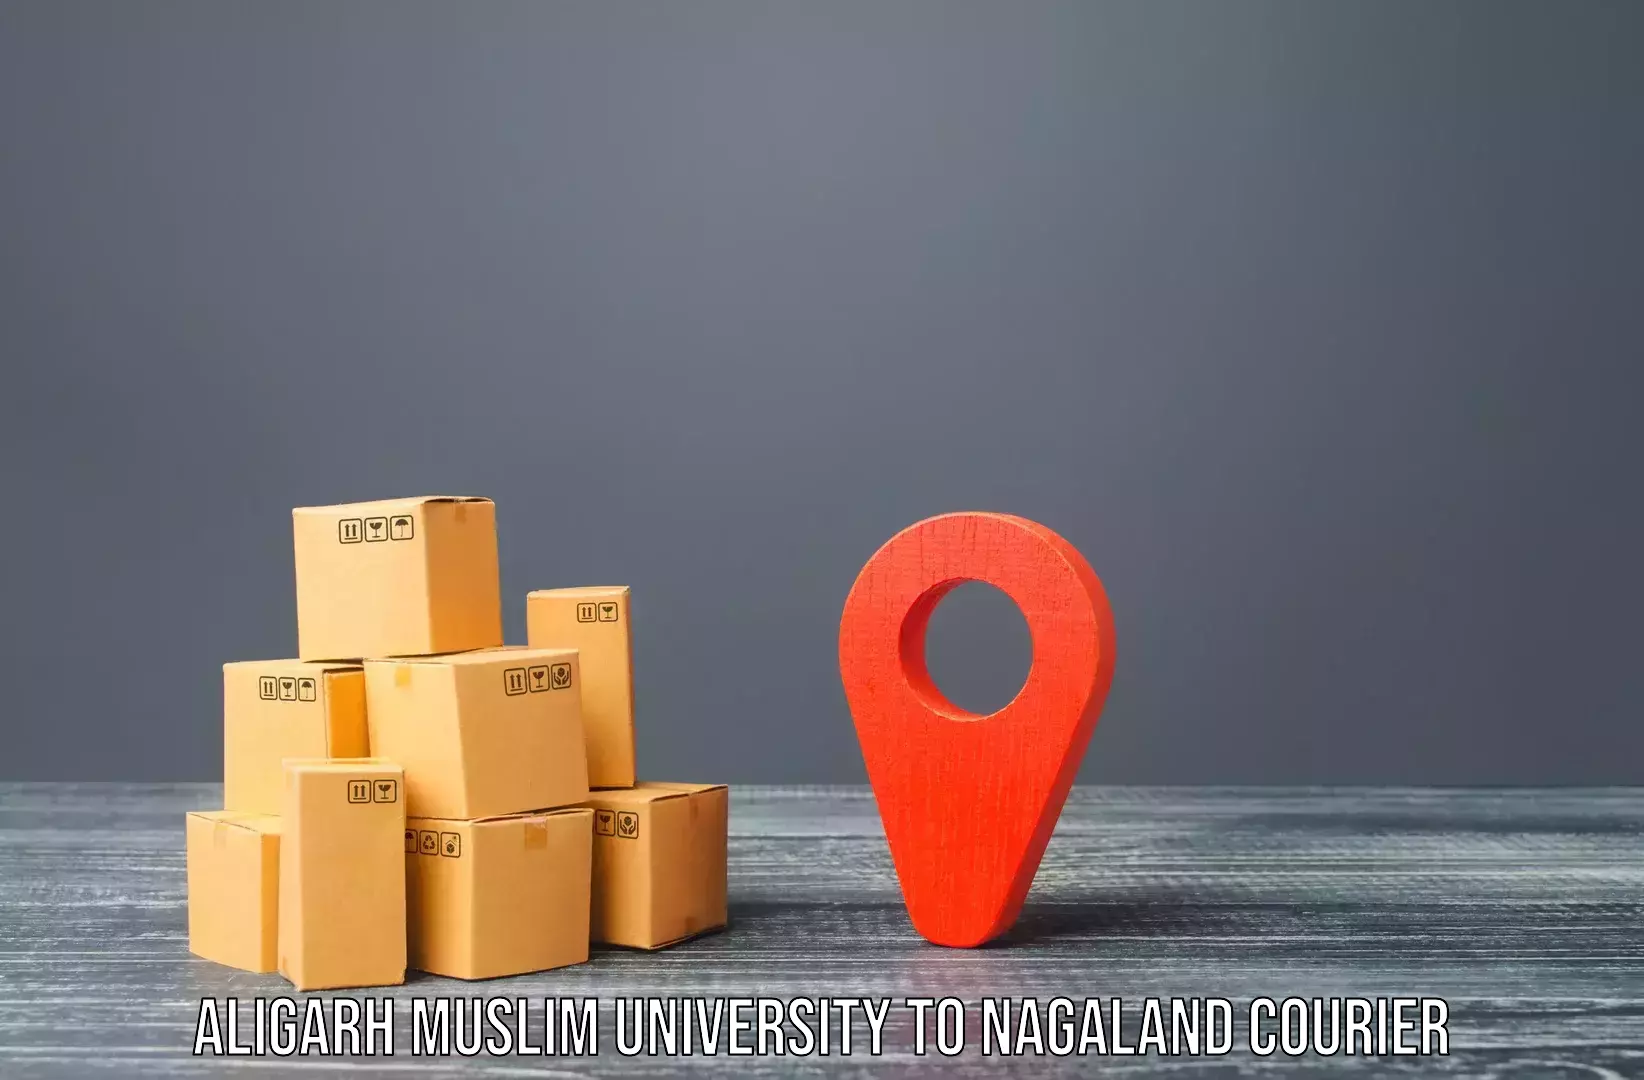 Door-to-door relocation services Aligarh Muslim University to Dimapur